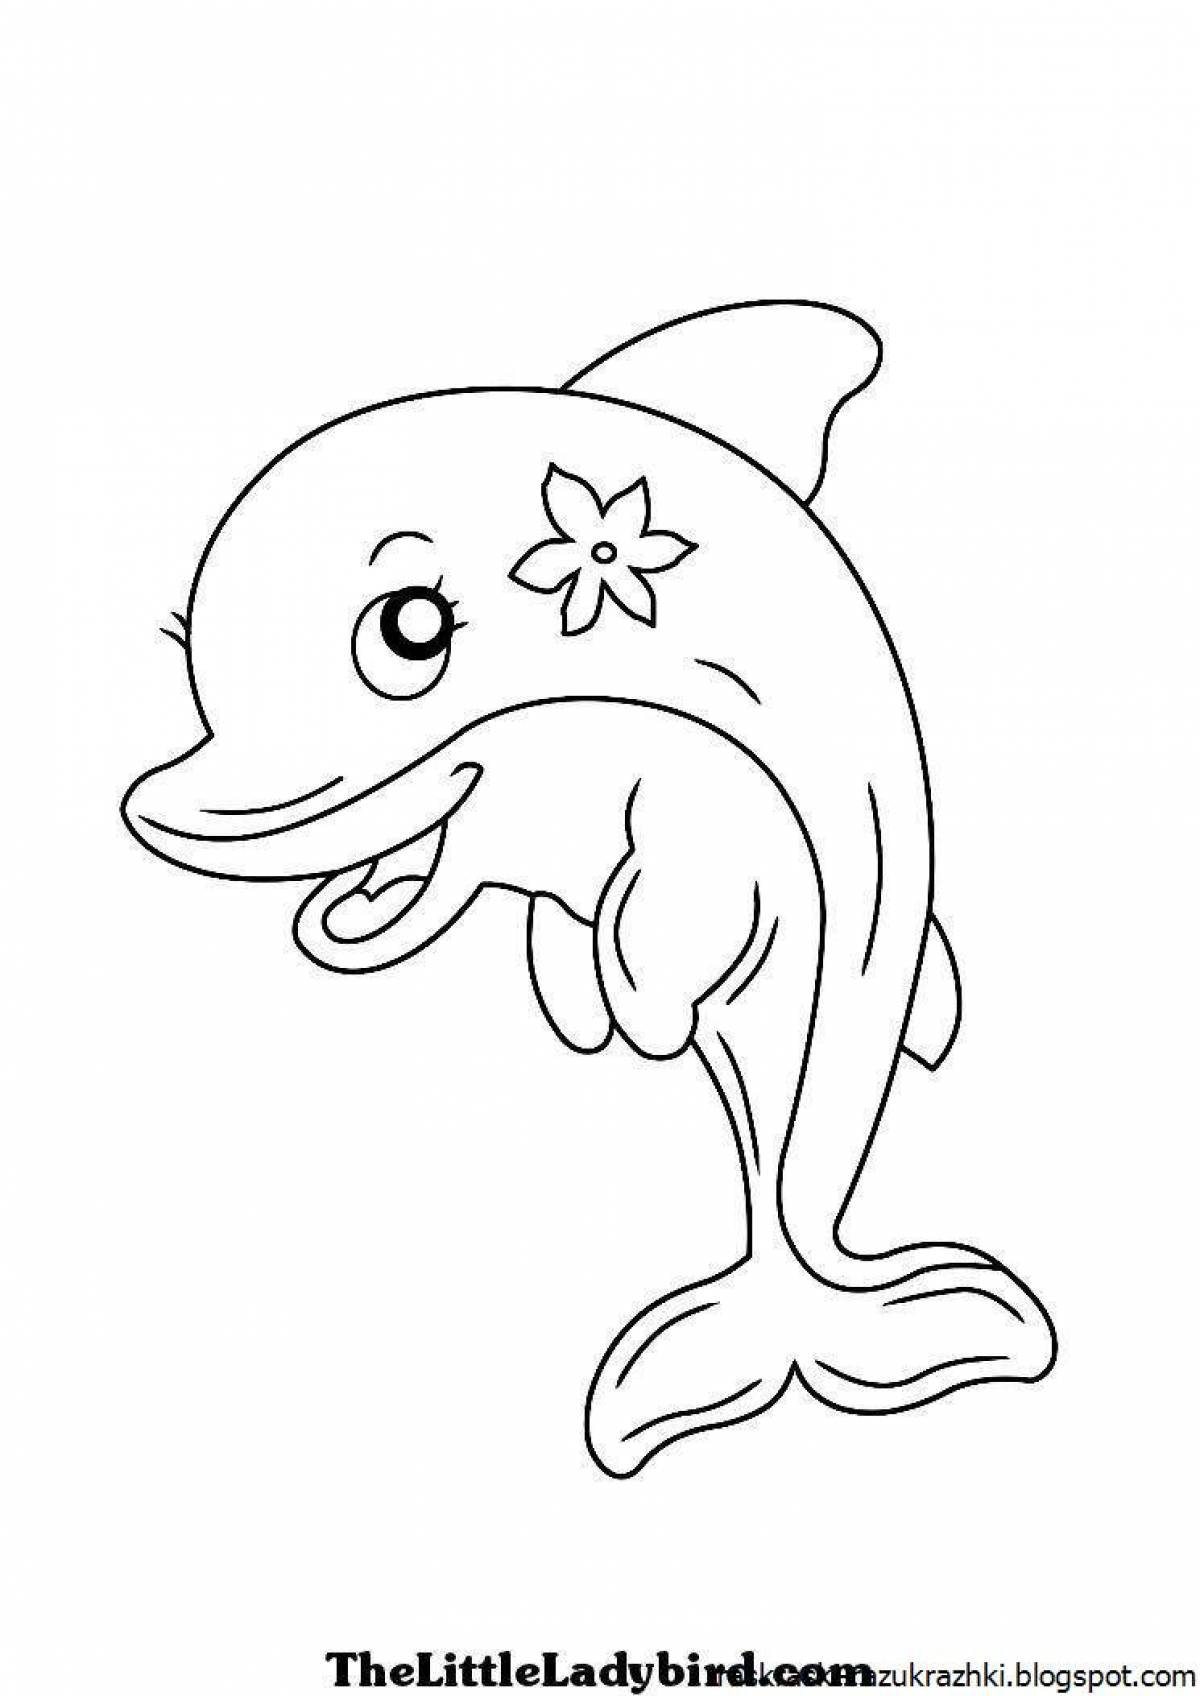 Развлекательная раскраска дельфинов для детей